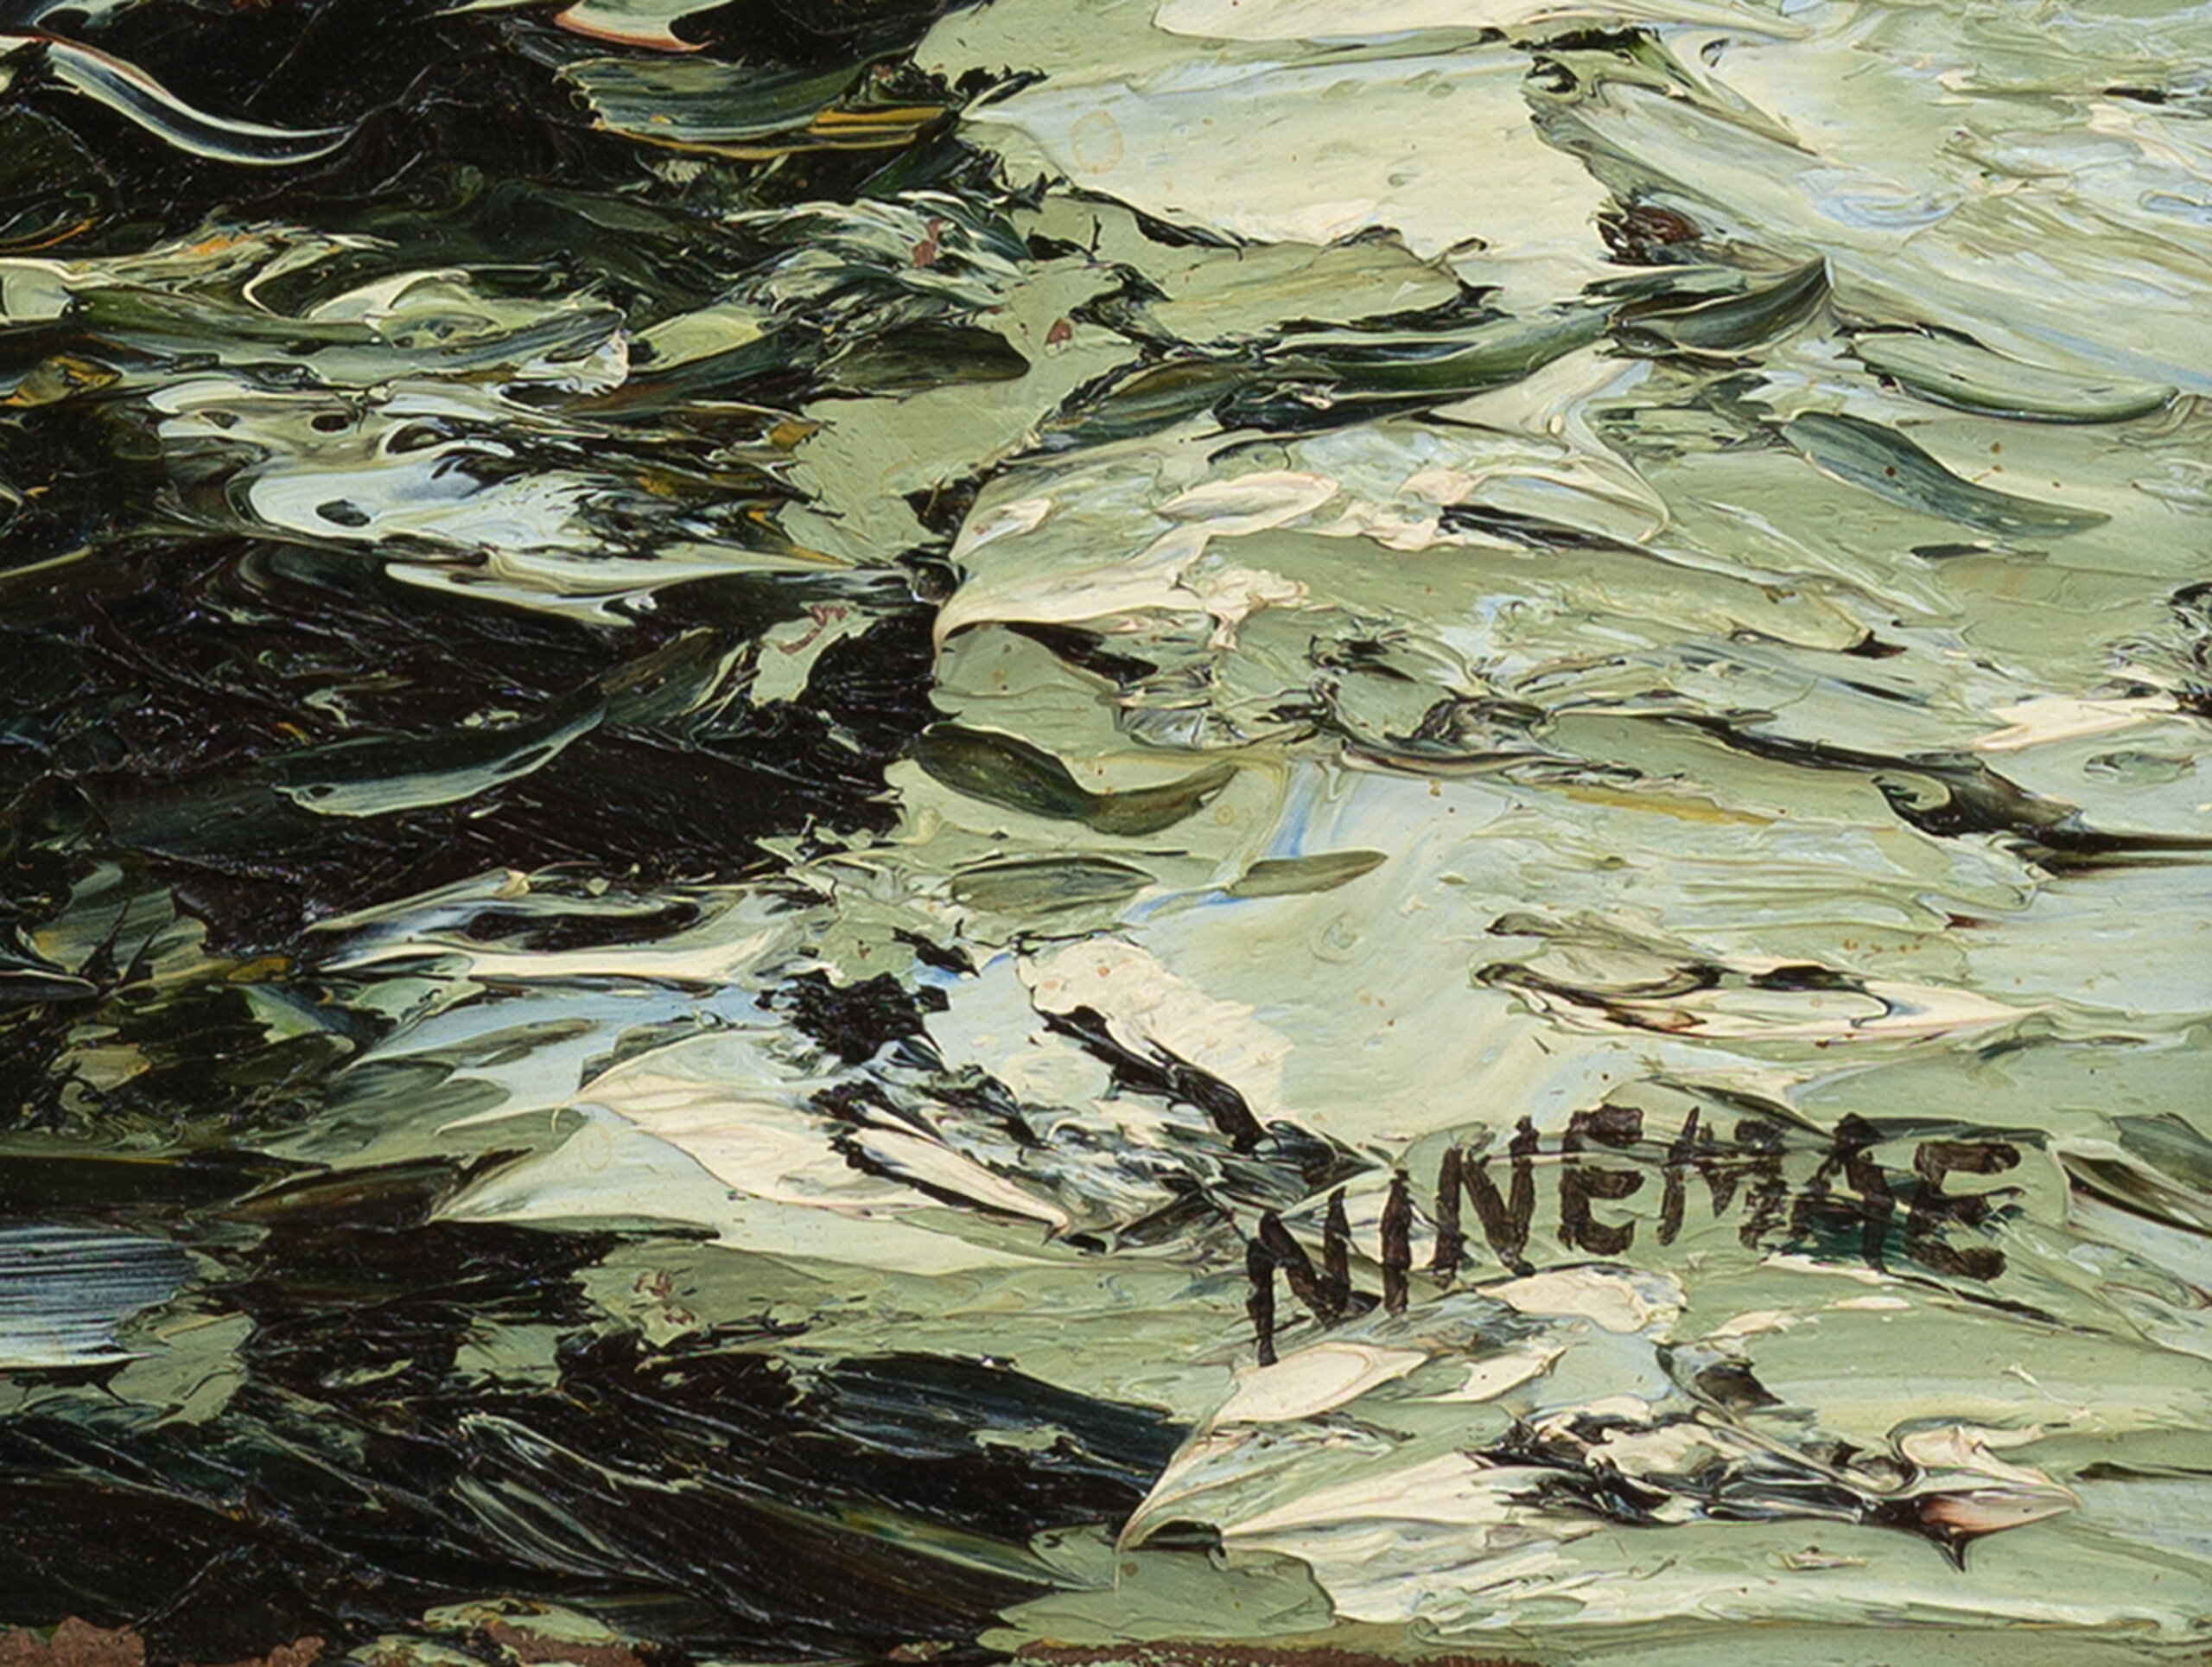 Boris Ninemäe “Mees ja meri”, 46 x 38 cm.